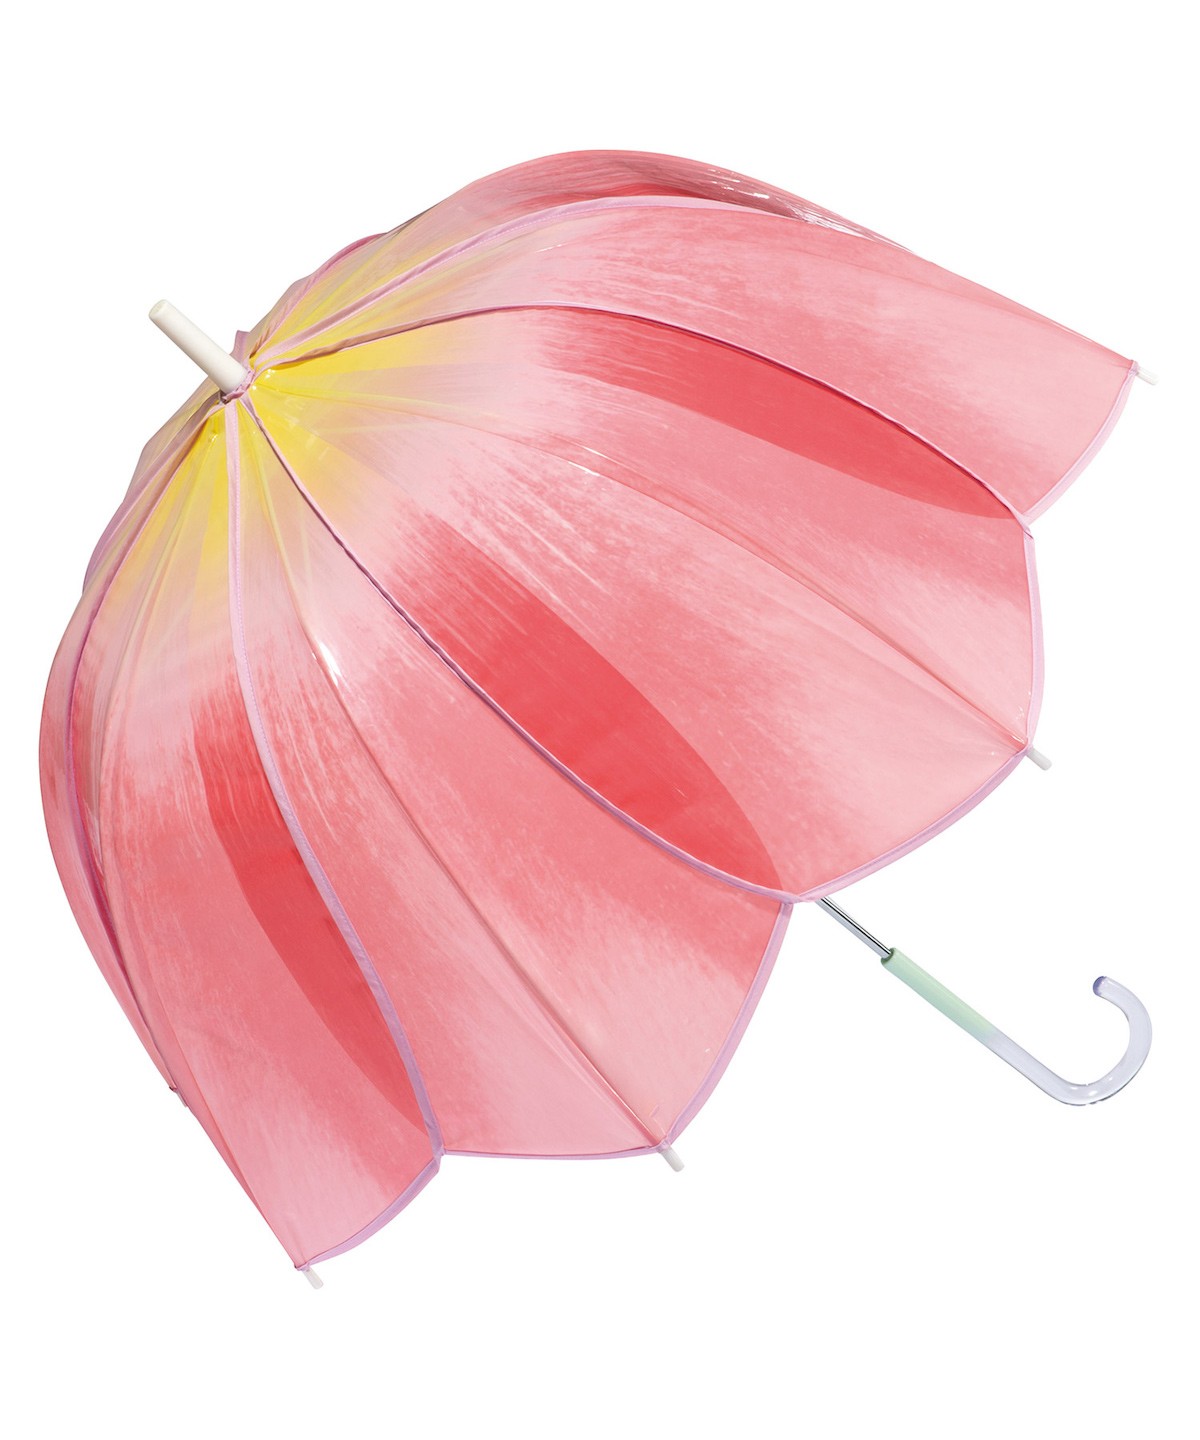 Wpc．“チューリップみたいな傘”登場！　丸みのあるフォルムが可愛らしいビニール傘